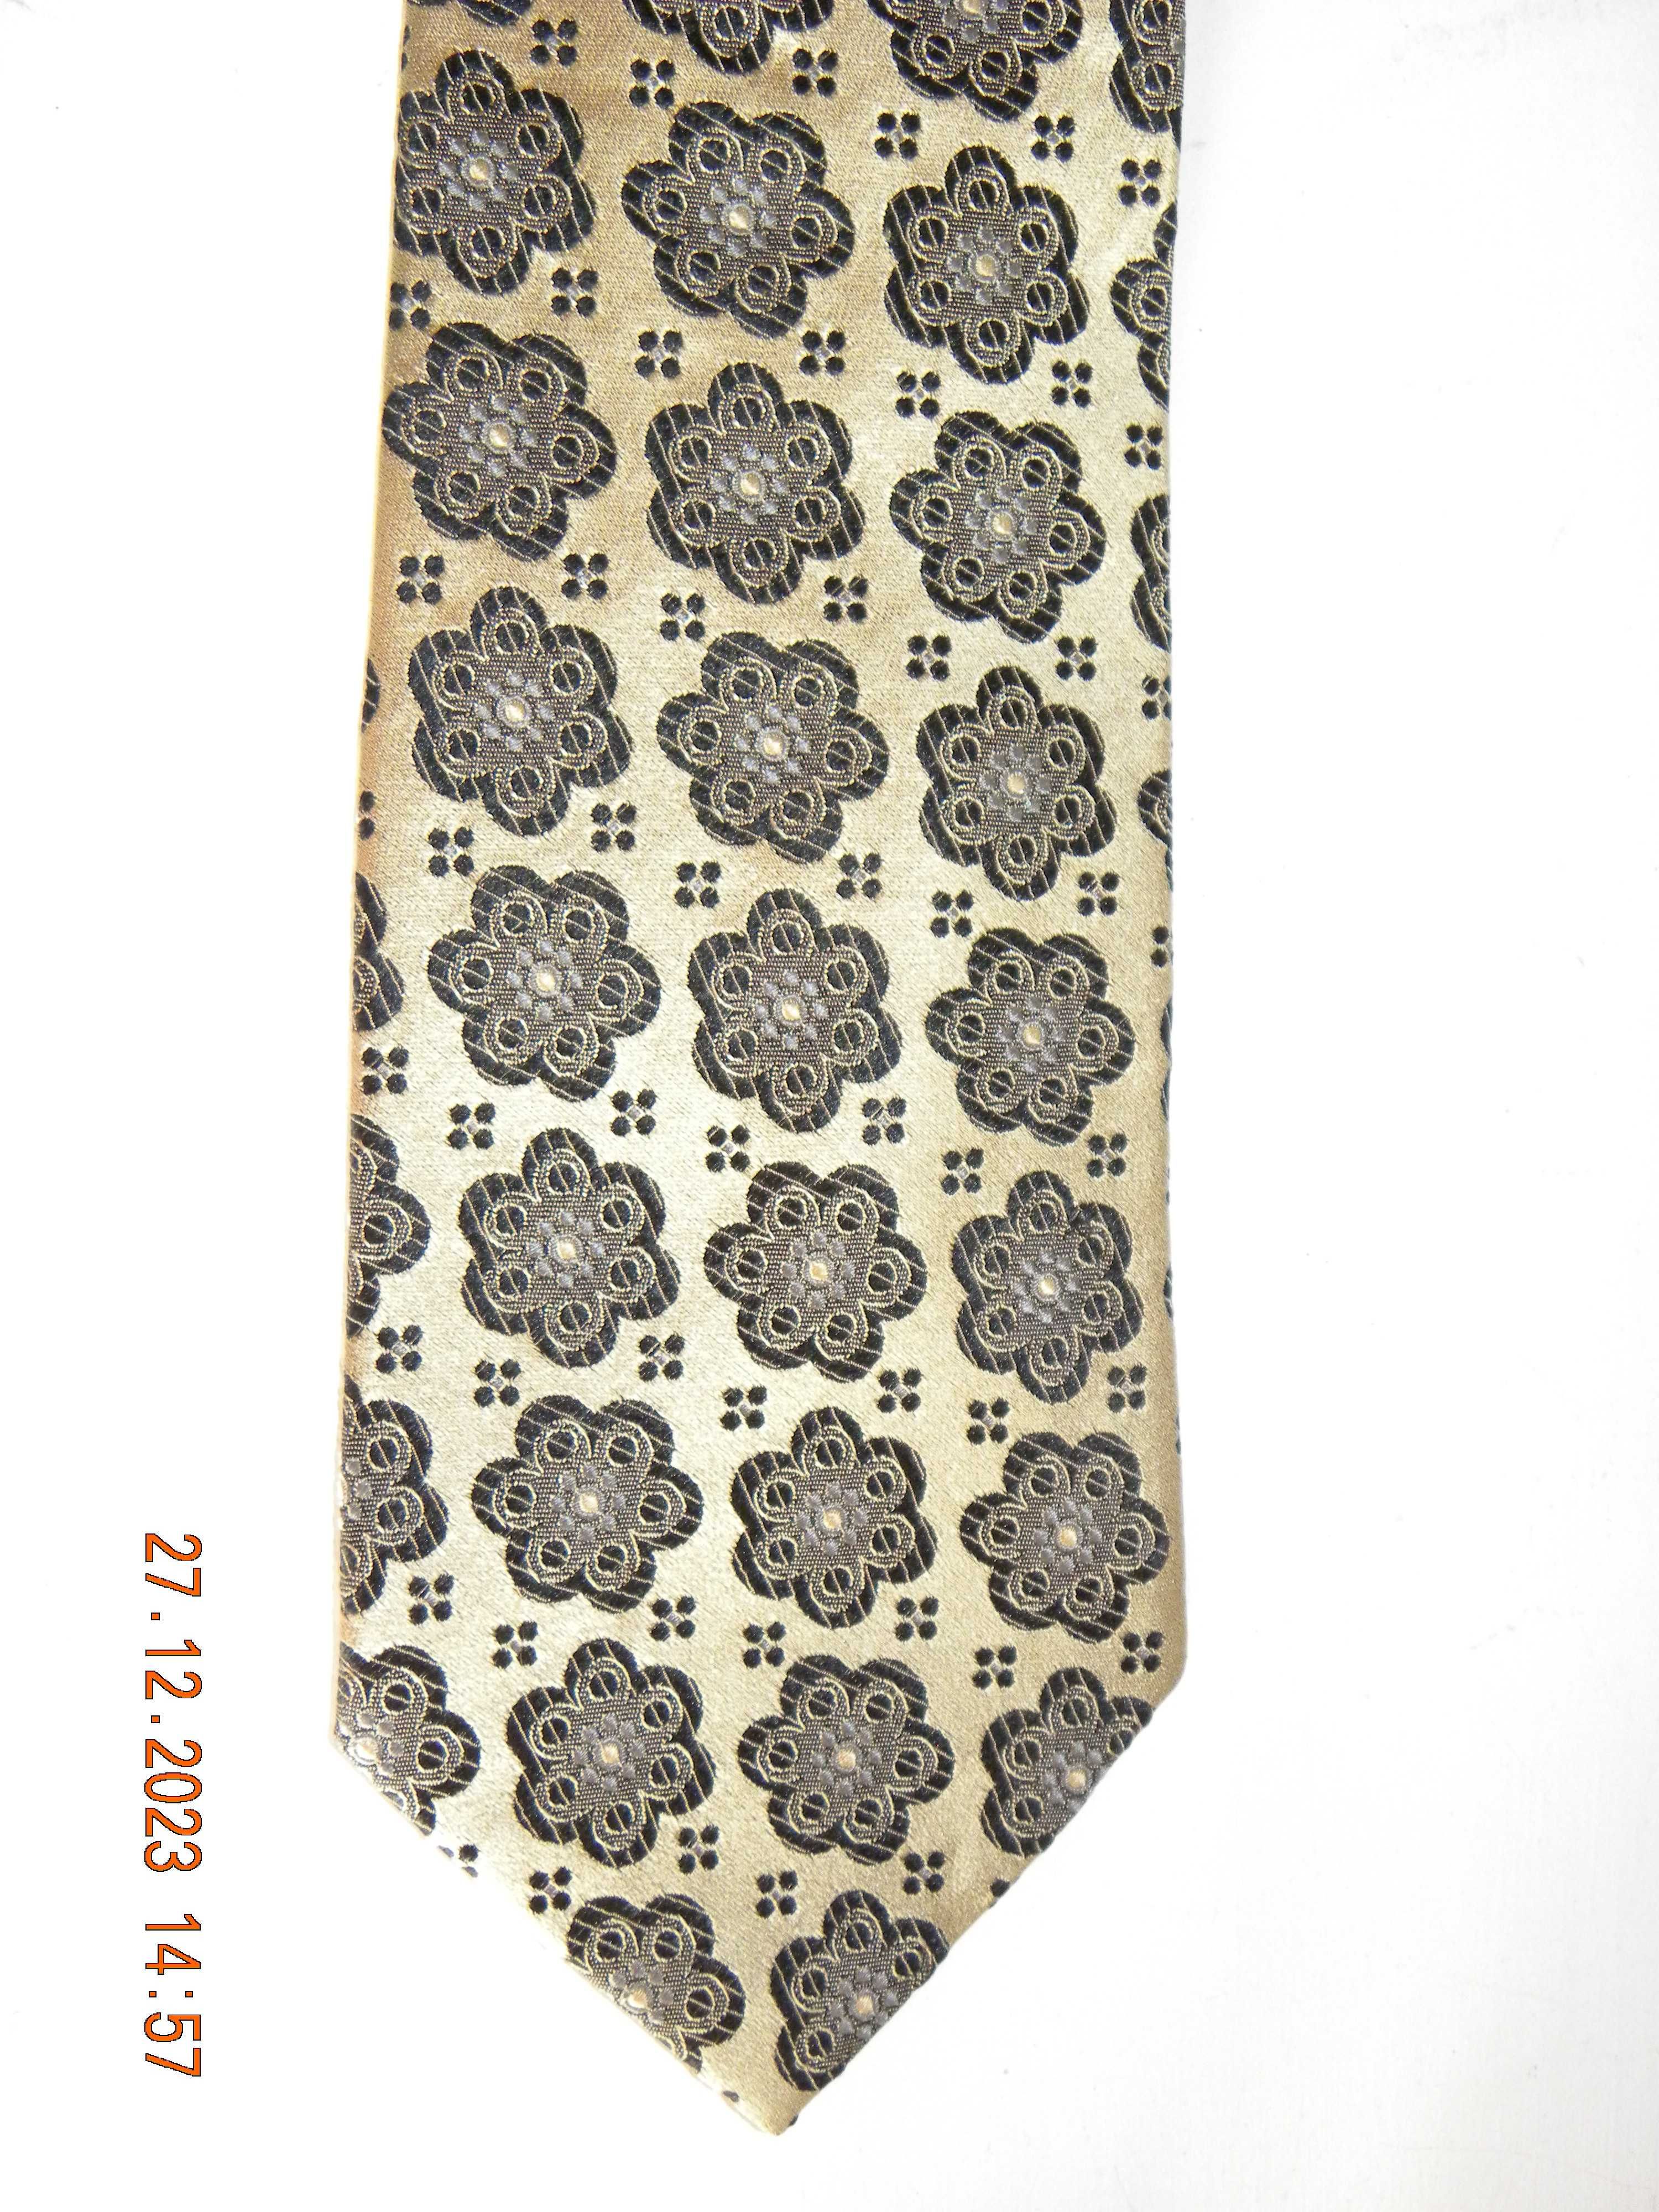 Jedwabny krawat wizytowy Portia since 1924